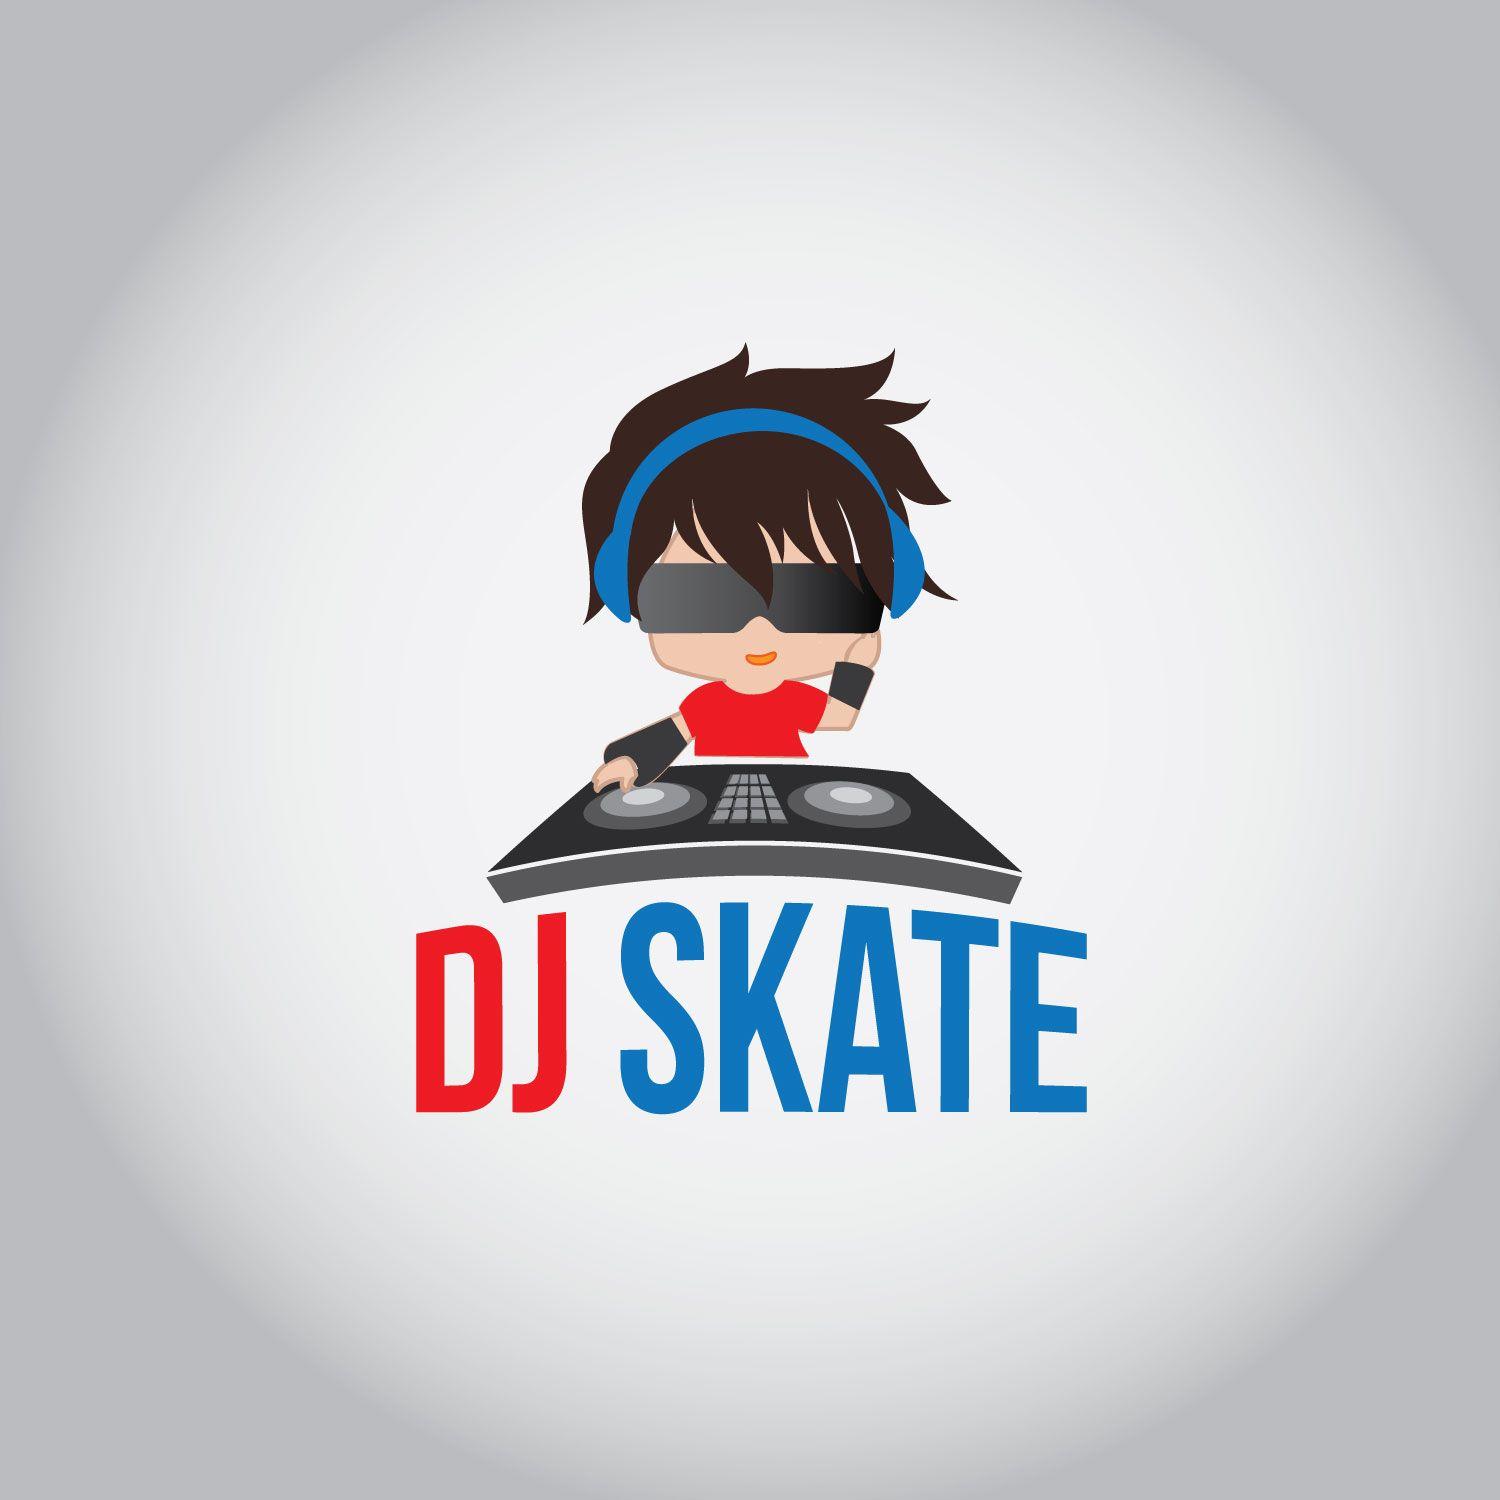 Conservative Logo - Modern, Conservative Logo Design for DJ Skate by concepts | Design ...